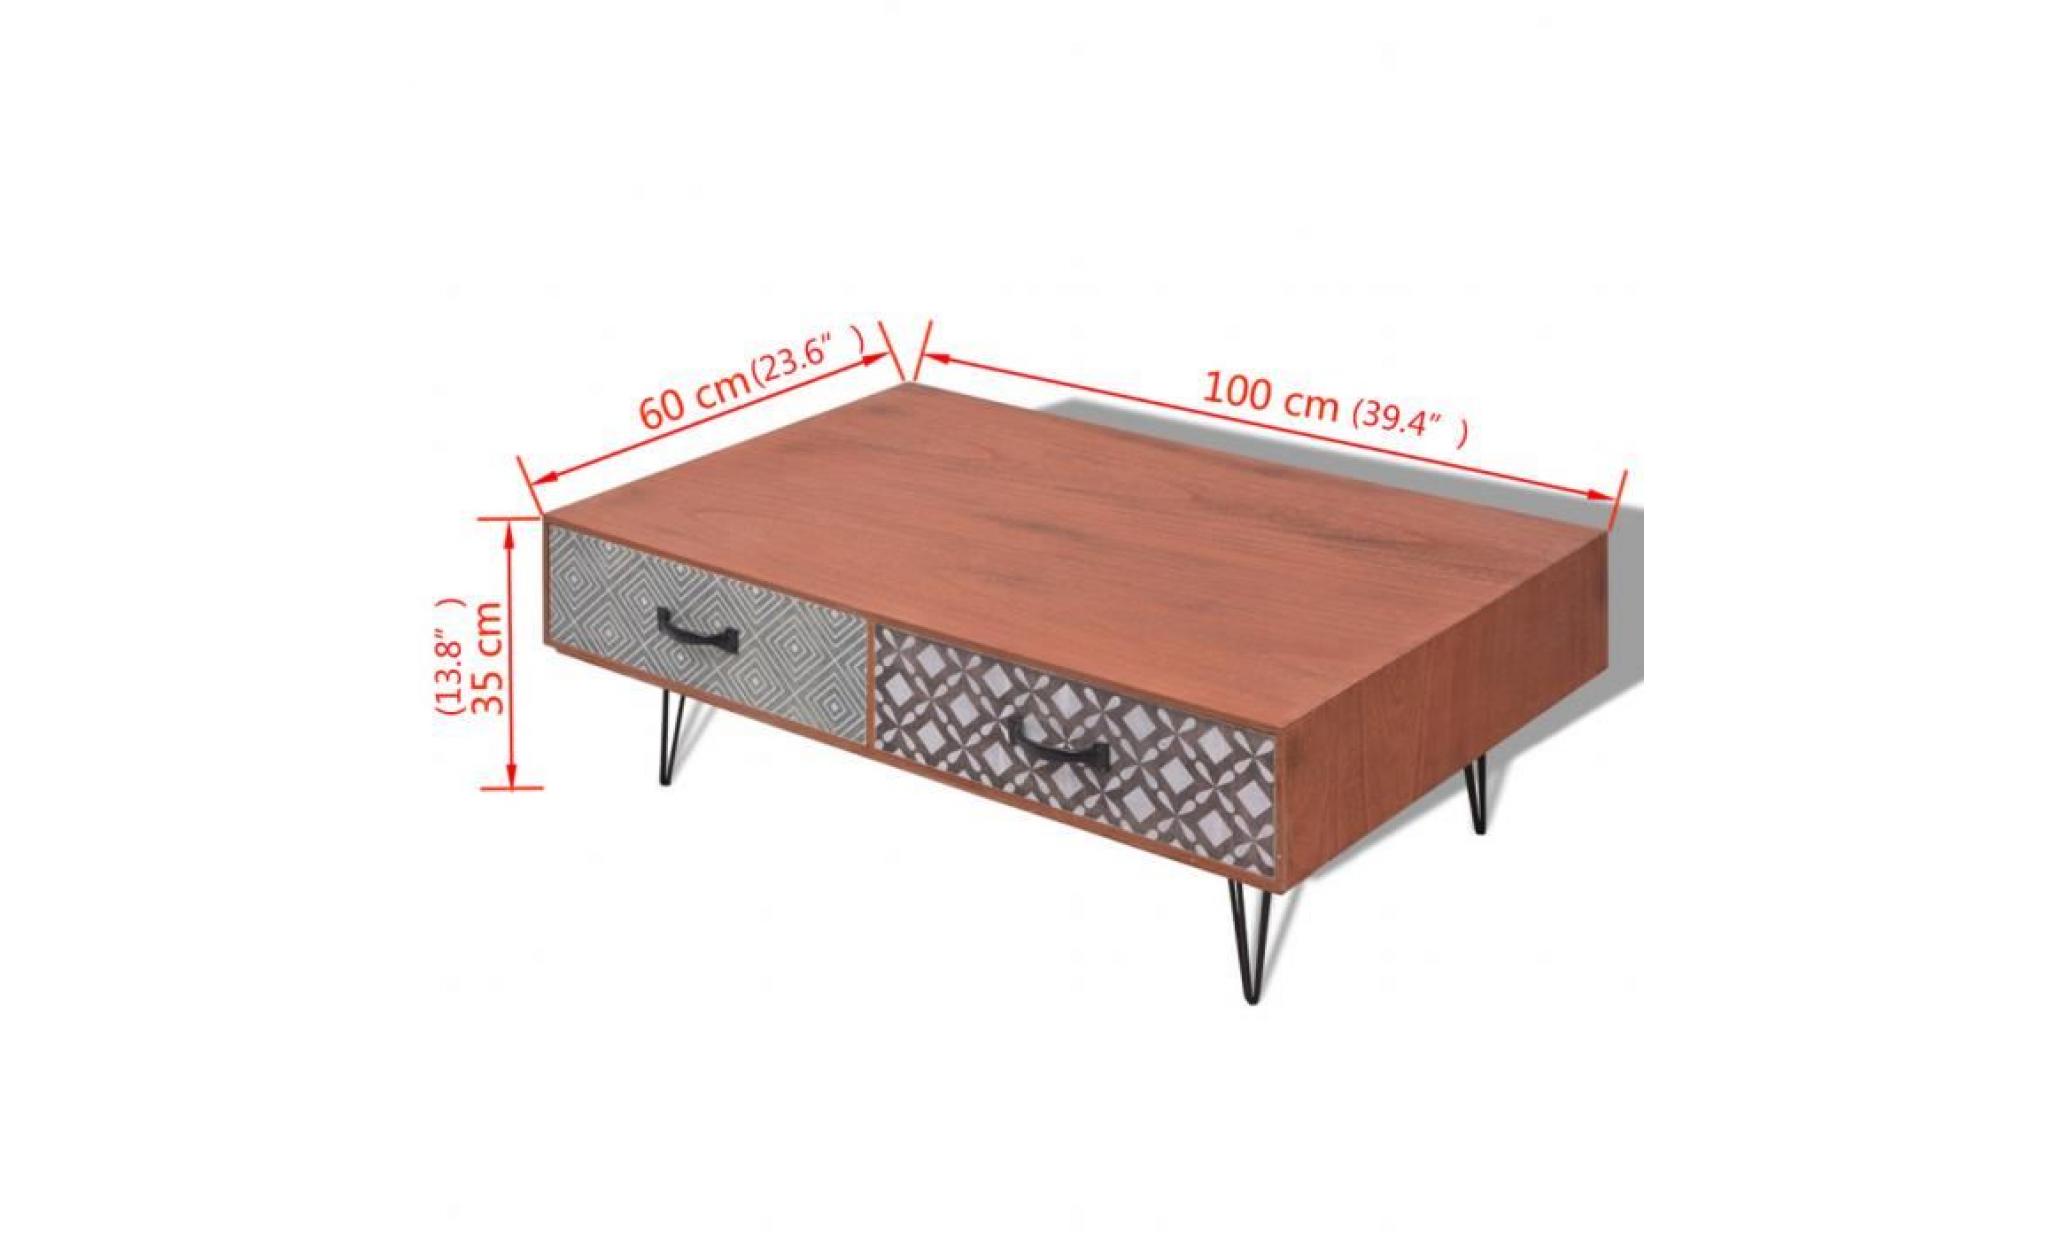 100 x 60 x 35 cm table basse en mdf+ métal avec 4 tiroirs haute qualité décoration rétro pour salon salle bureau marron pas cher